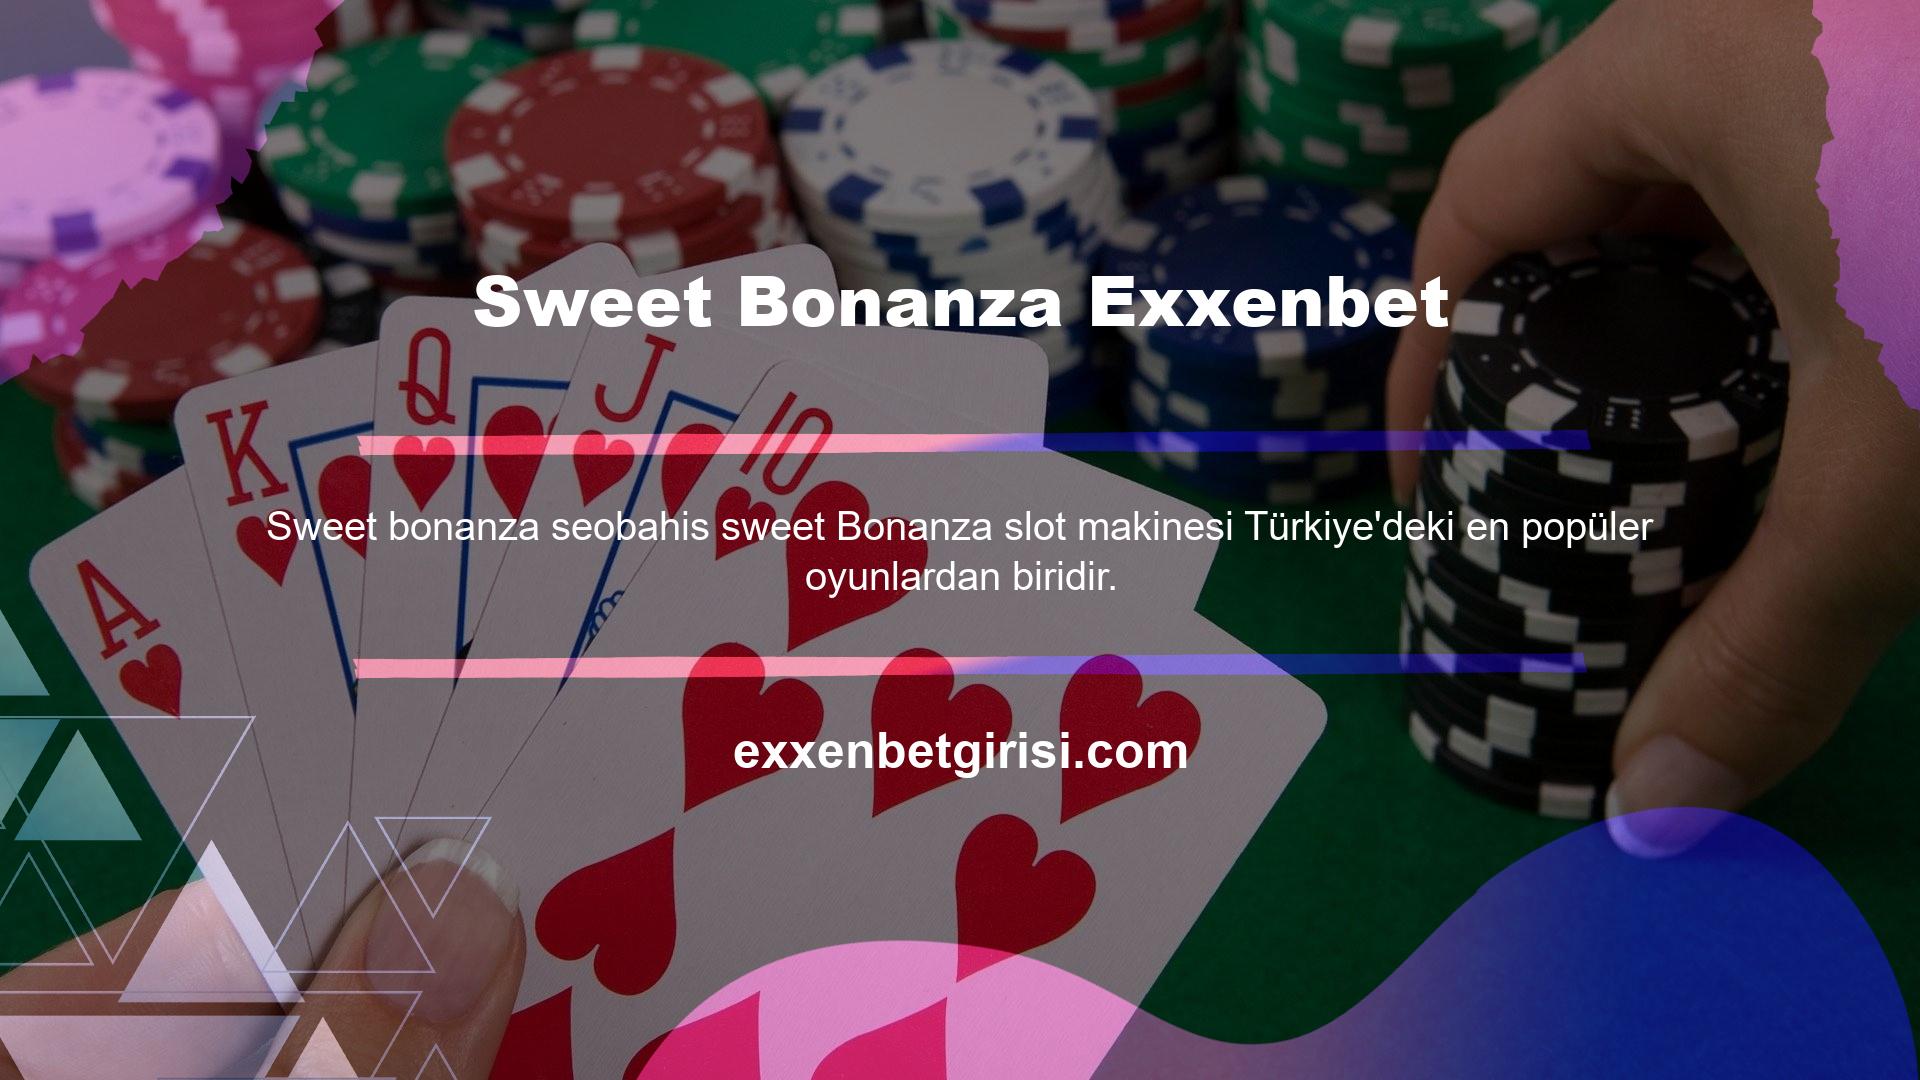 Sweet Bonanza Exxenbet, çok ilginç bonuslara sahip, anlaşılması ve oynanması kolay bir slot oyunu olduğundan en popüler oyunlardan biridir